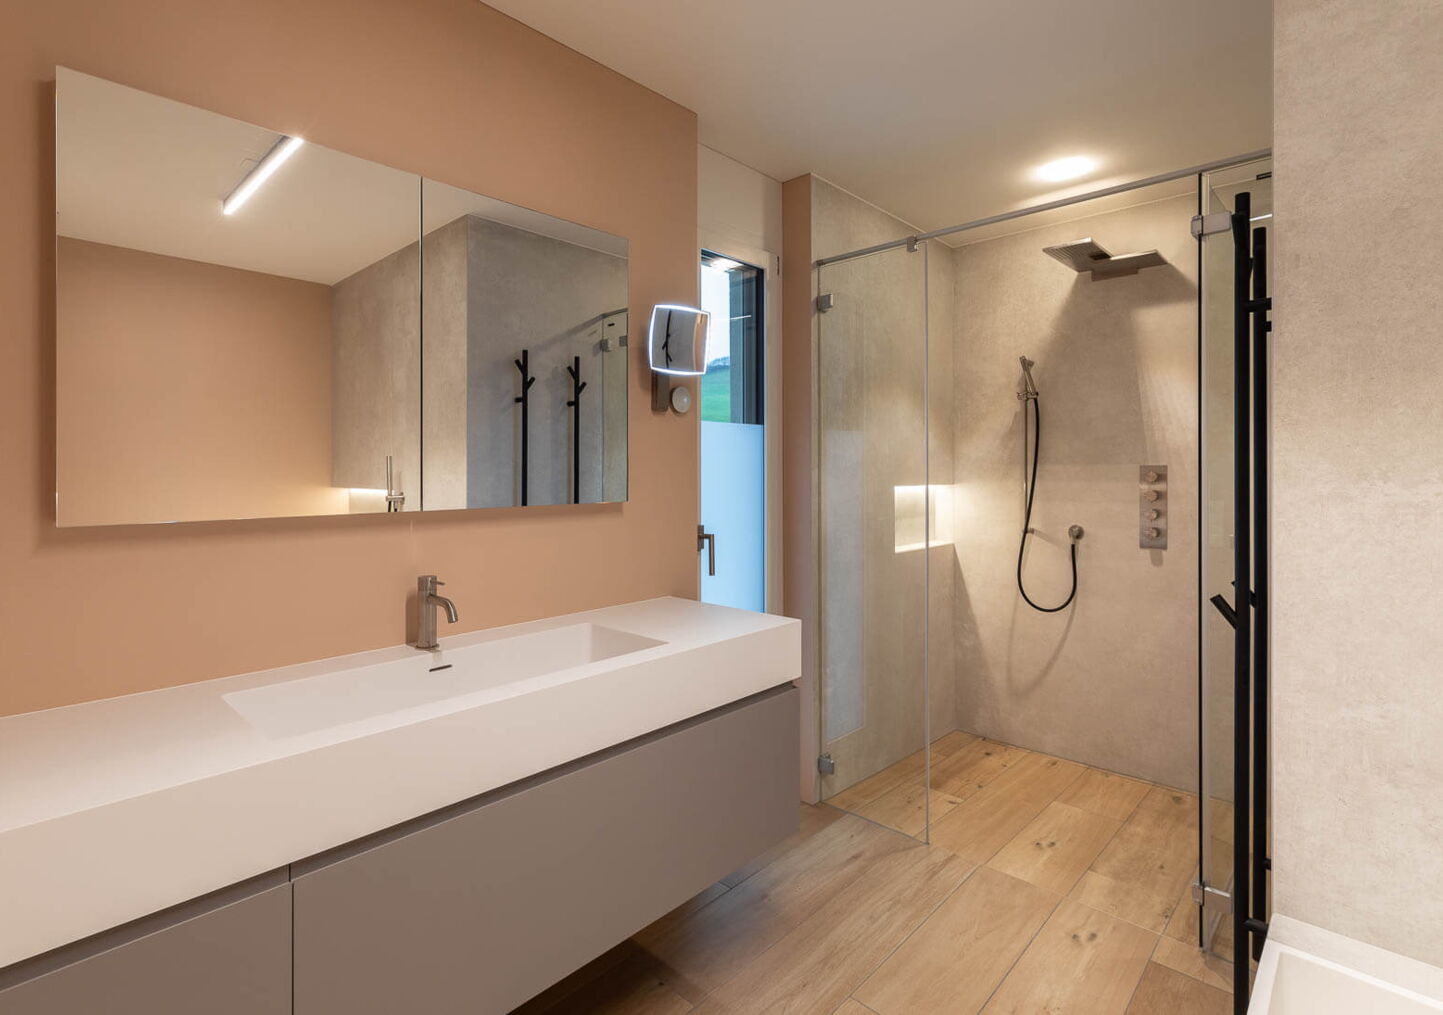 Interieurfotografie Luzern: Badezimmer mit begehbarer Dusche